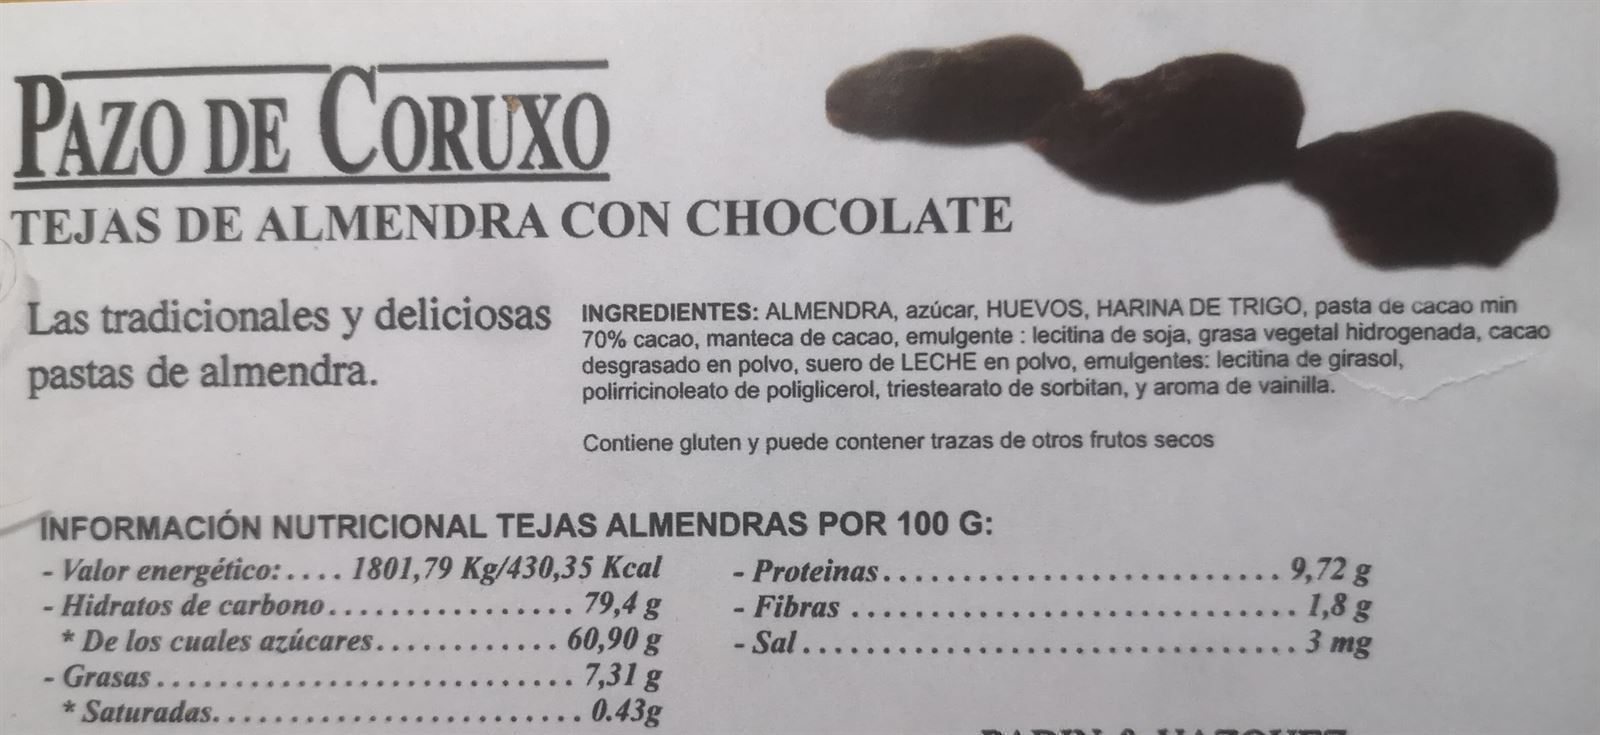 Tejas de Almendra con Chocolate Pazo de Caruxo 200grs - Imagen 2